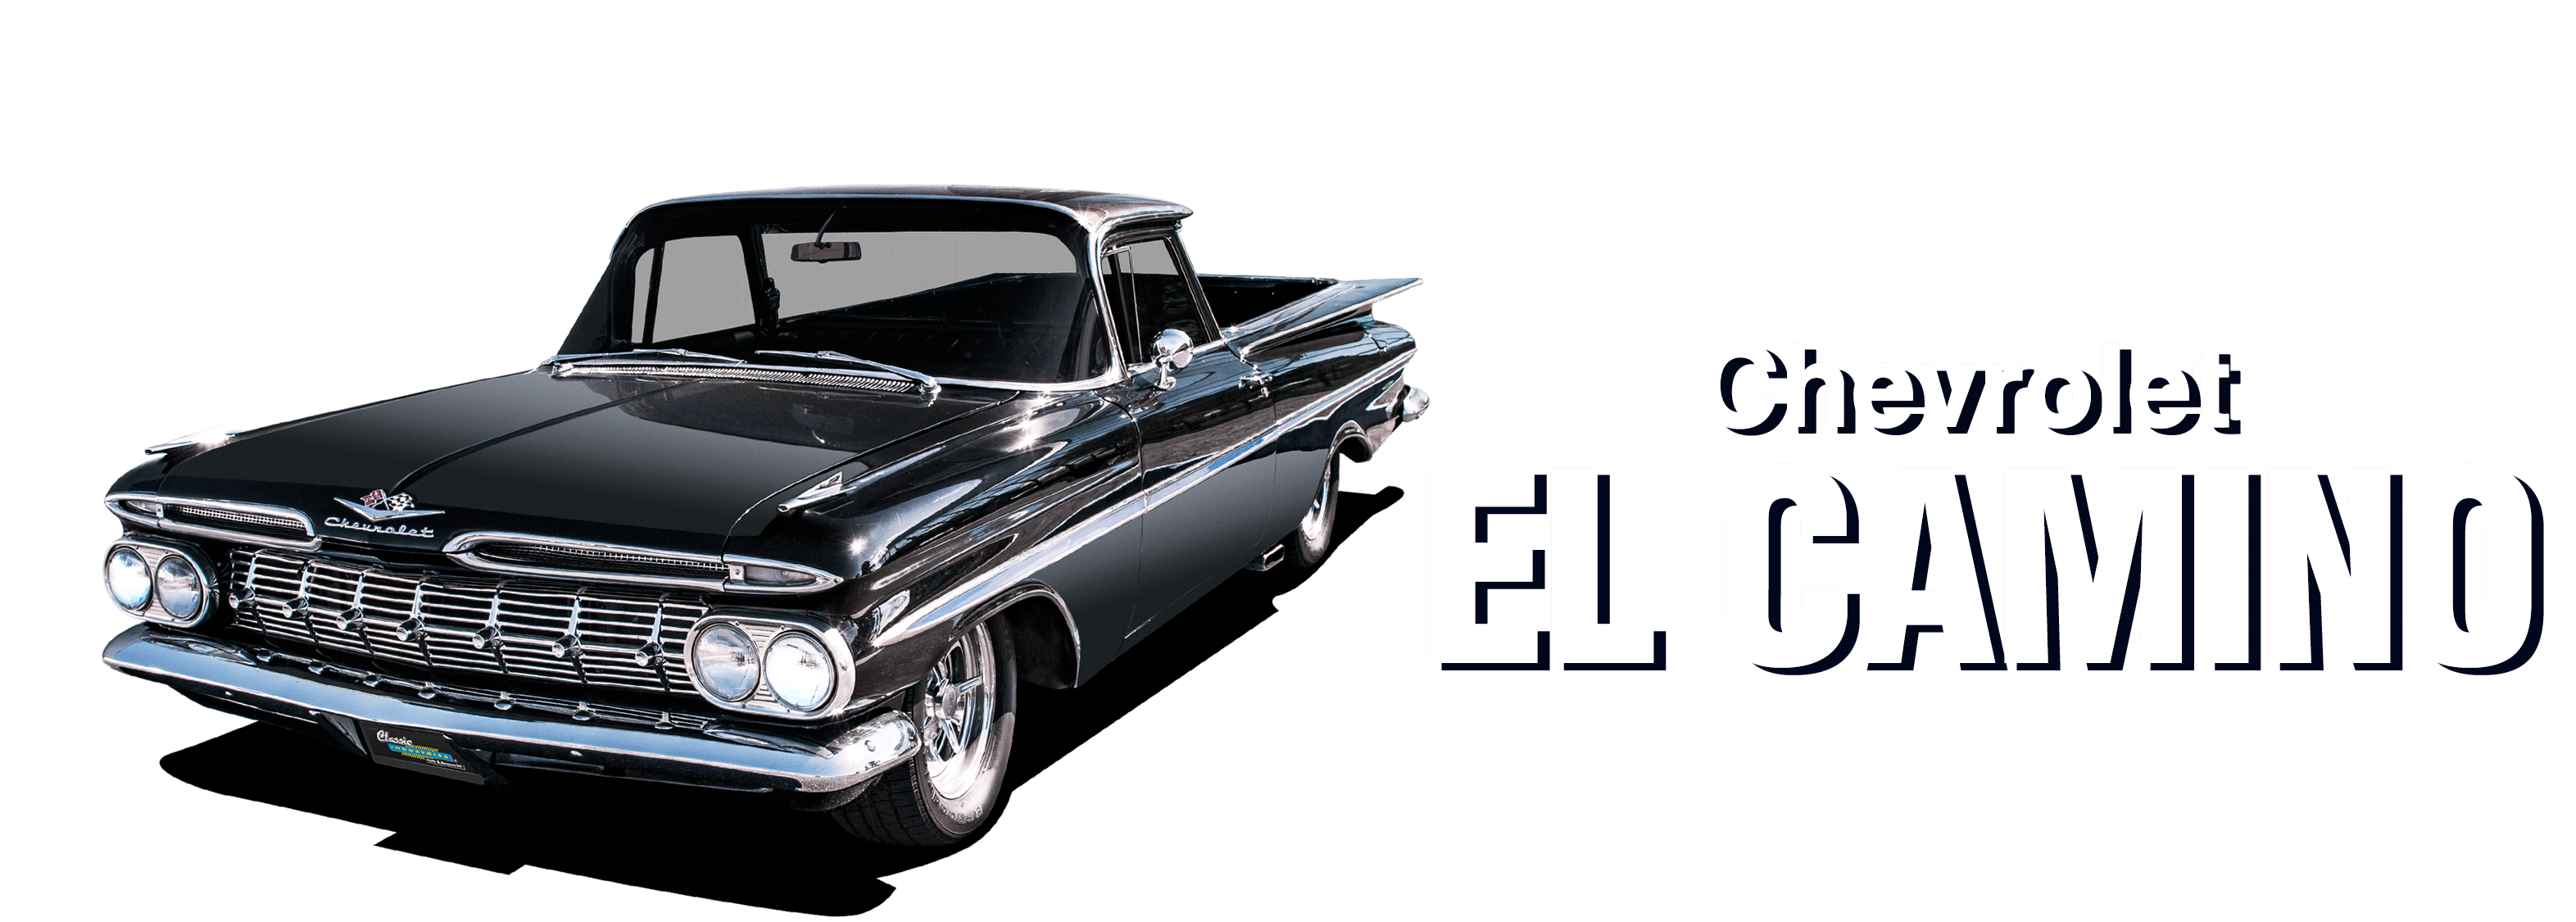 Chevy-El-Camino-vehicle-desktop-2023